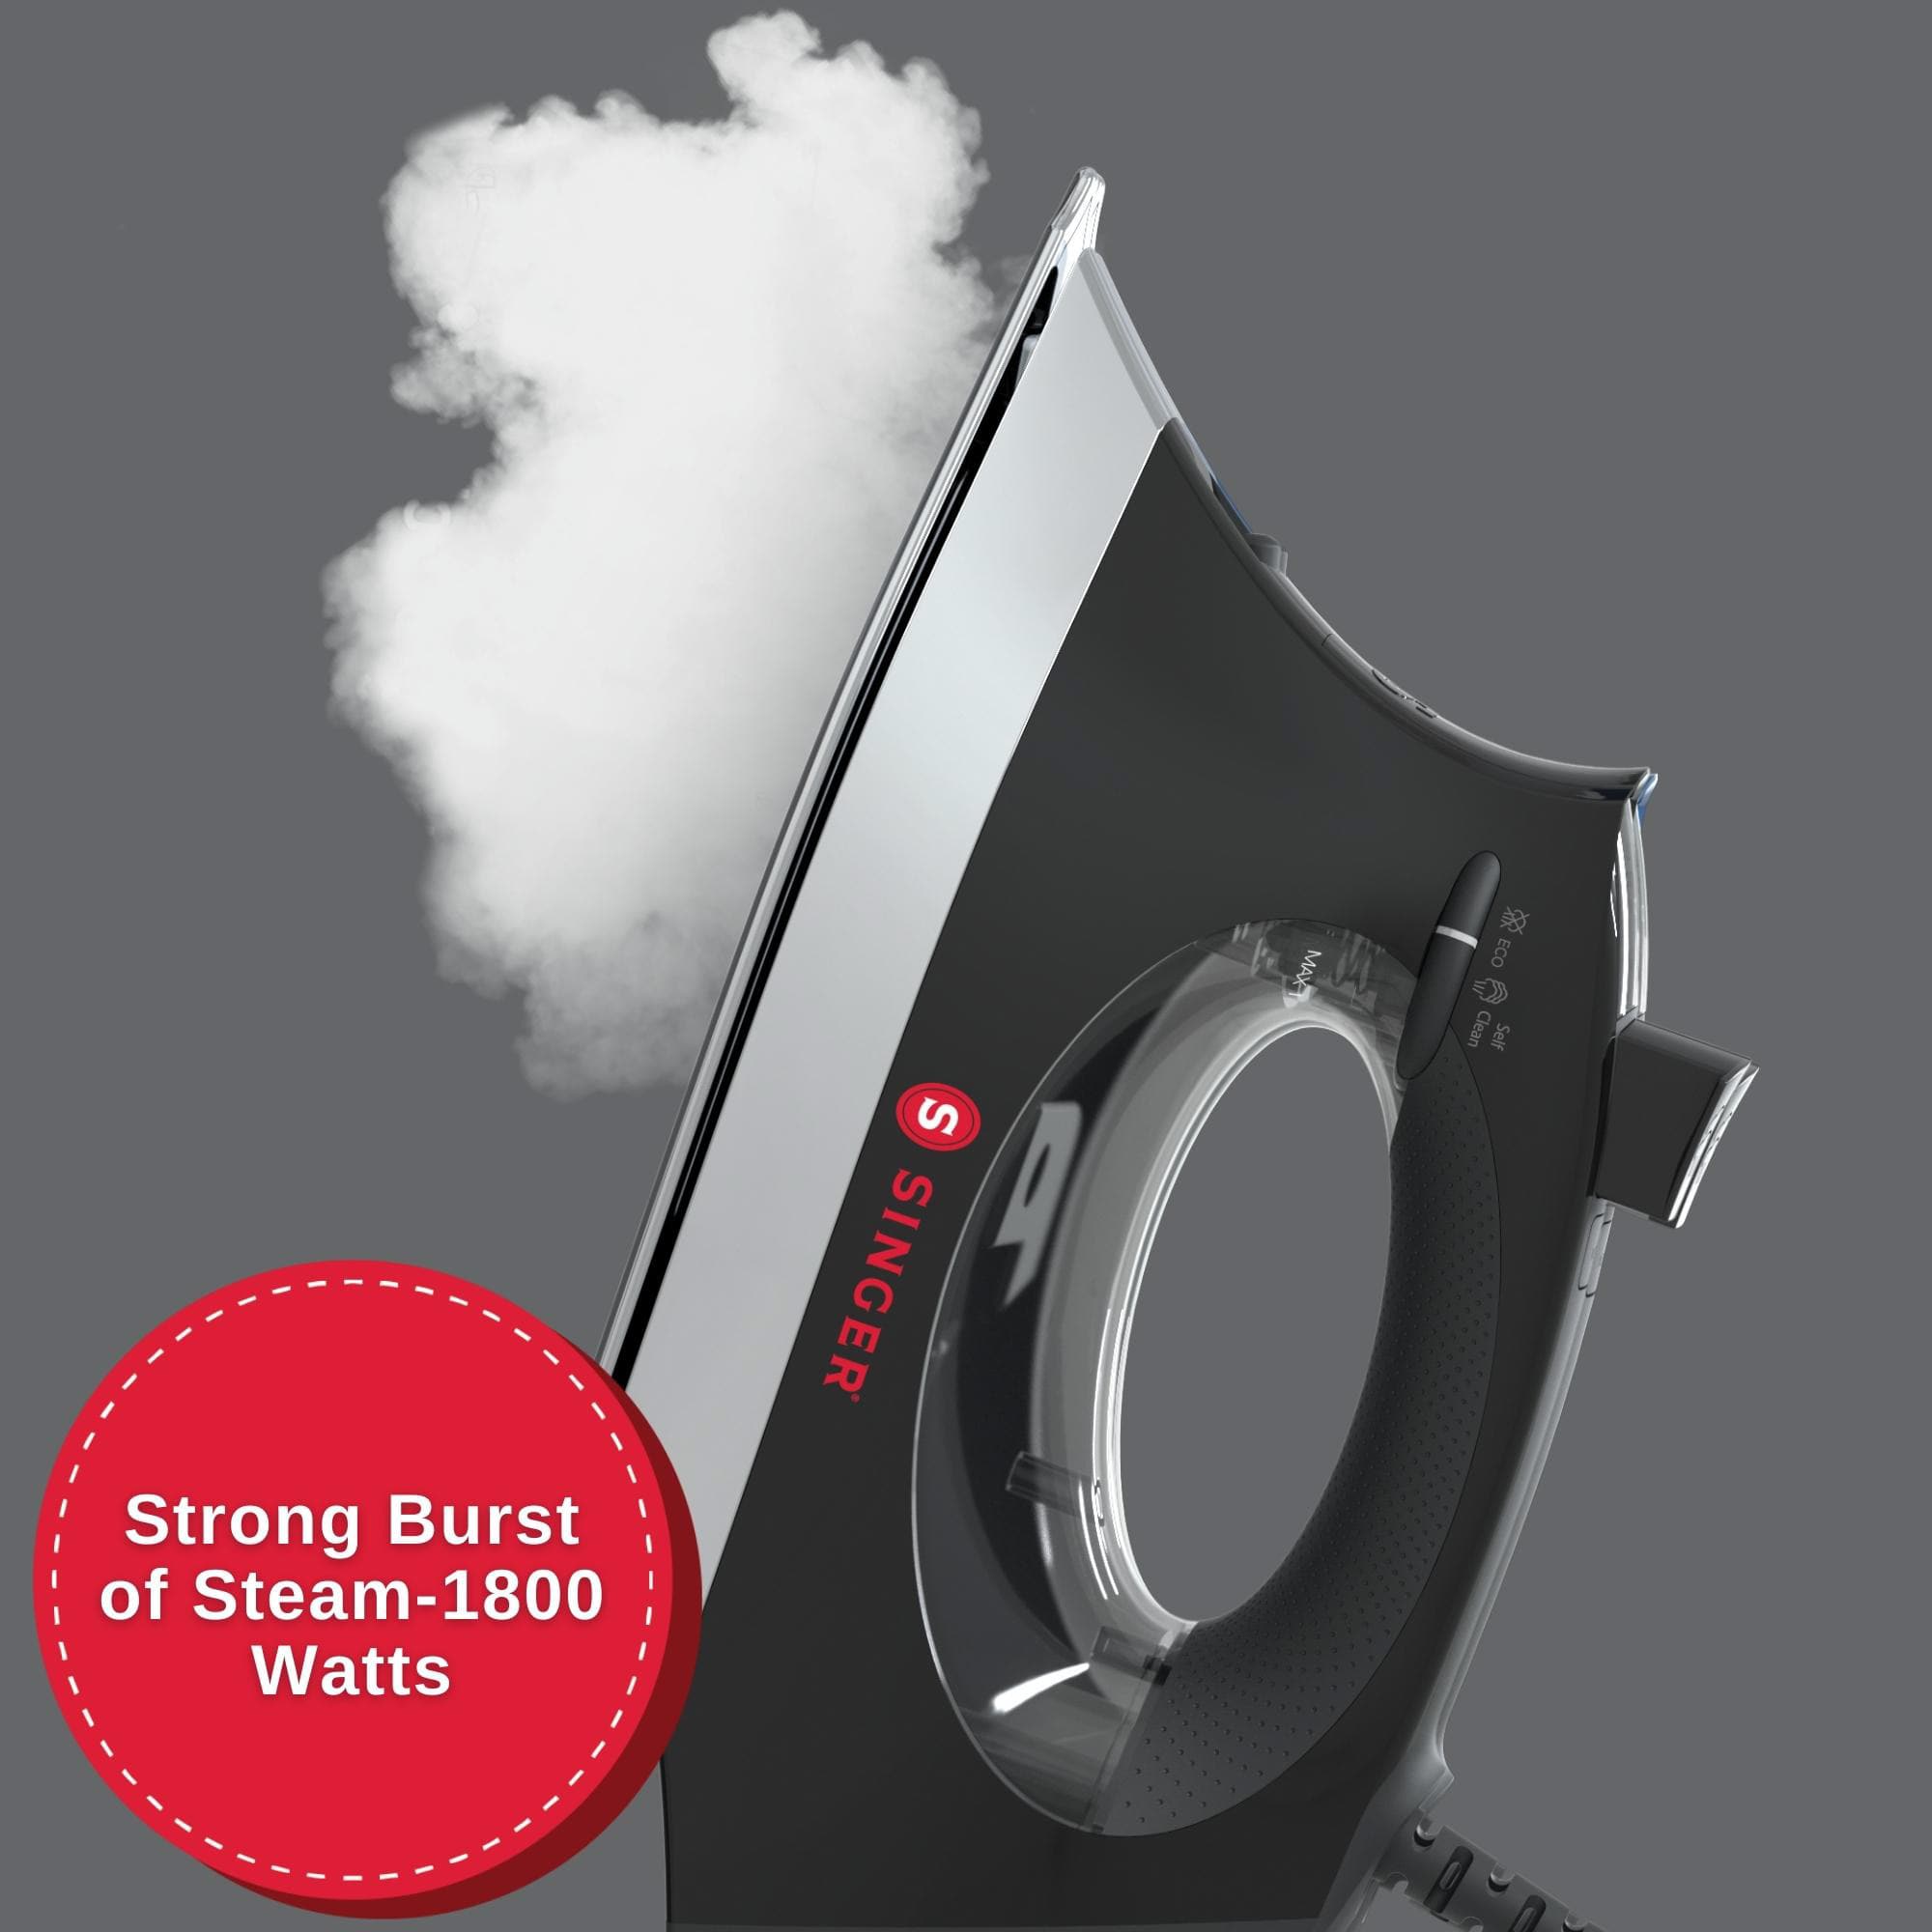 SINGER&#xAE; SteamCraft Plus 2.0 Iron